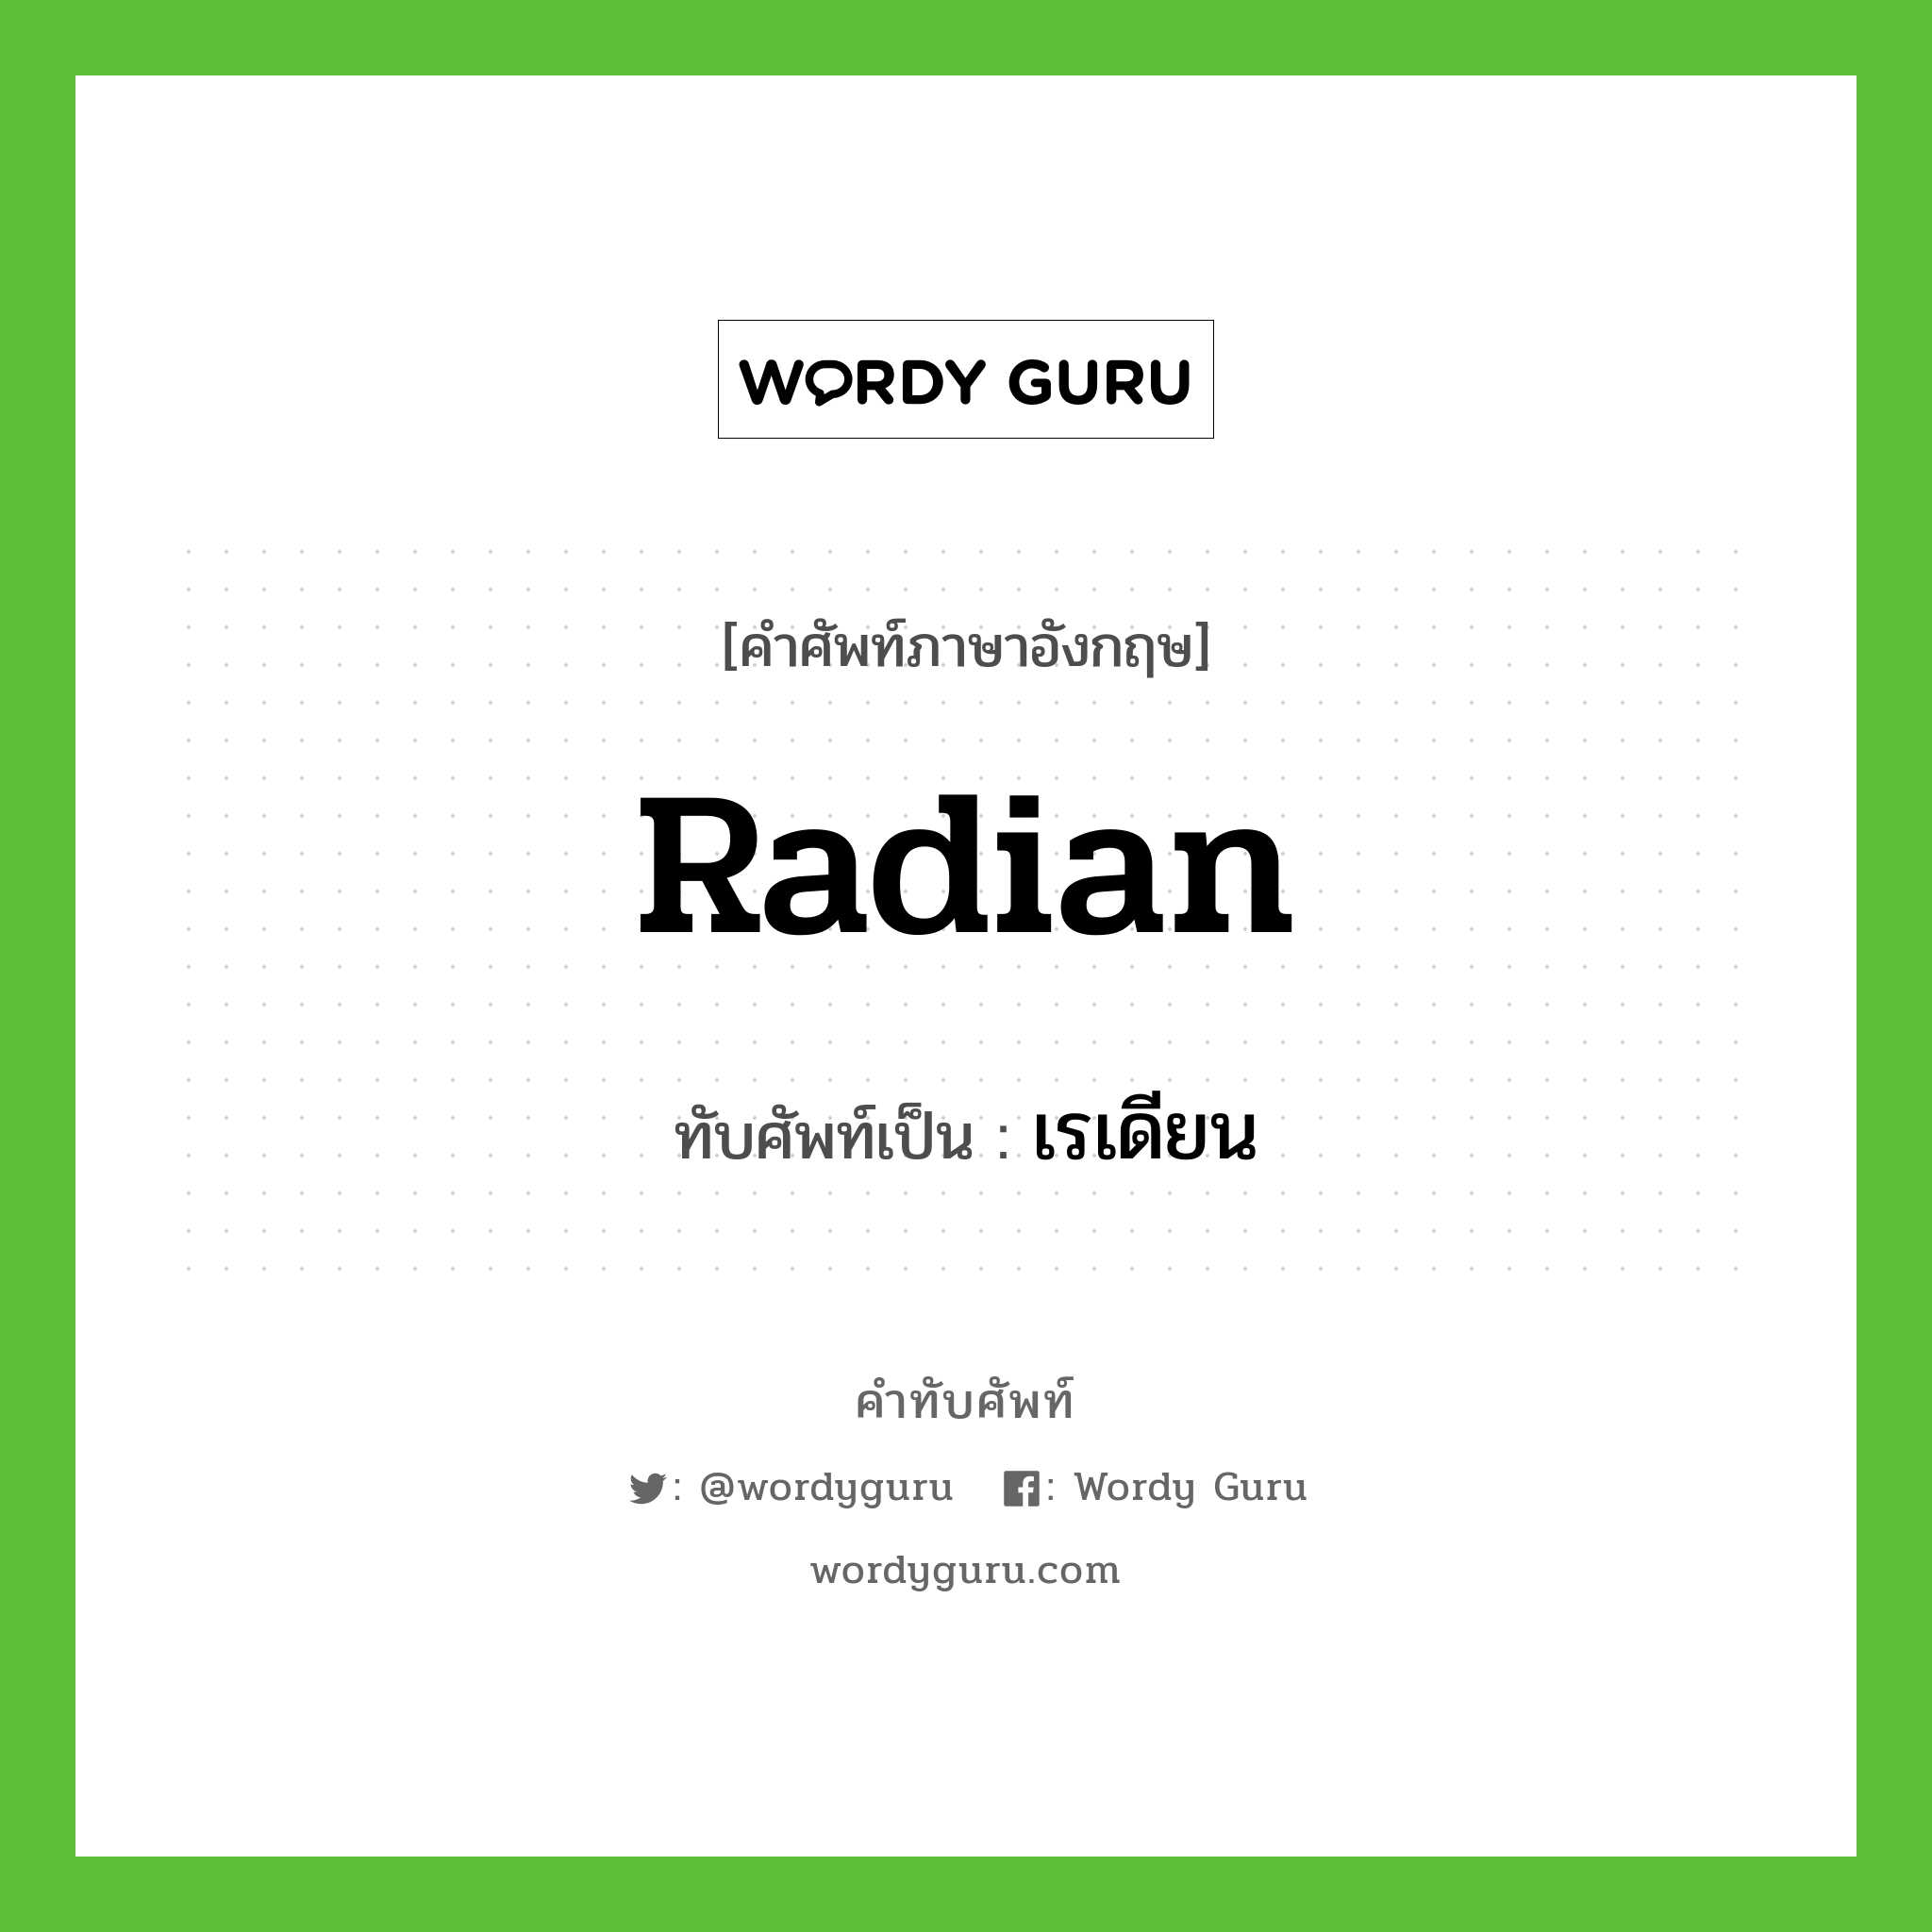 radian เขียนเป็นคำไทยว่าอะไร?, คำศัพท์ภาษาอังกฤษ radian ทับศัพท์เป็น เรเดียน